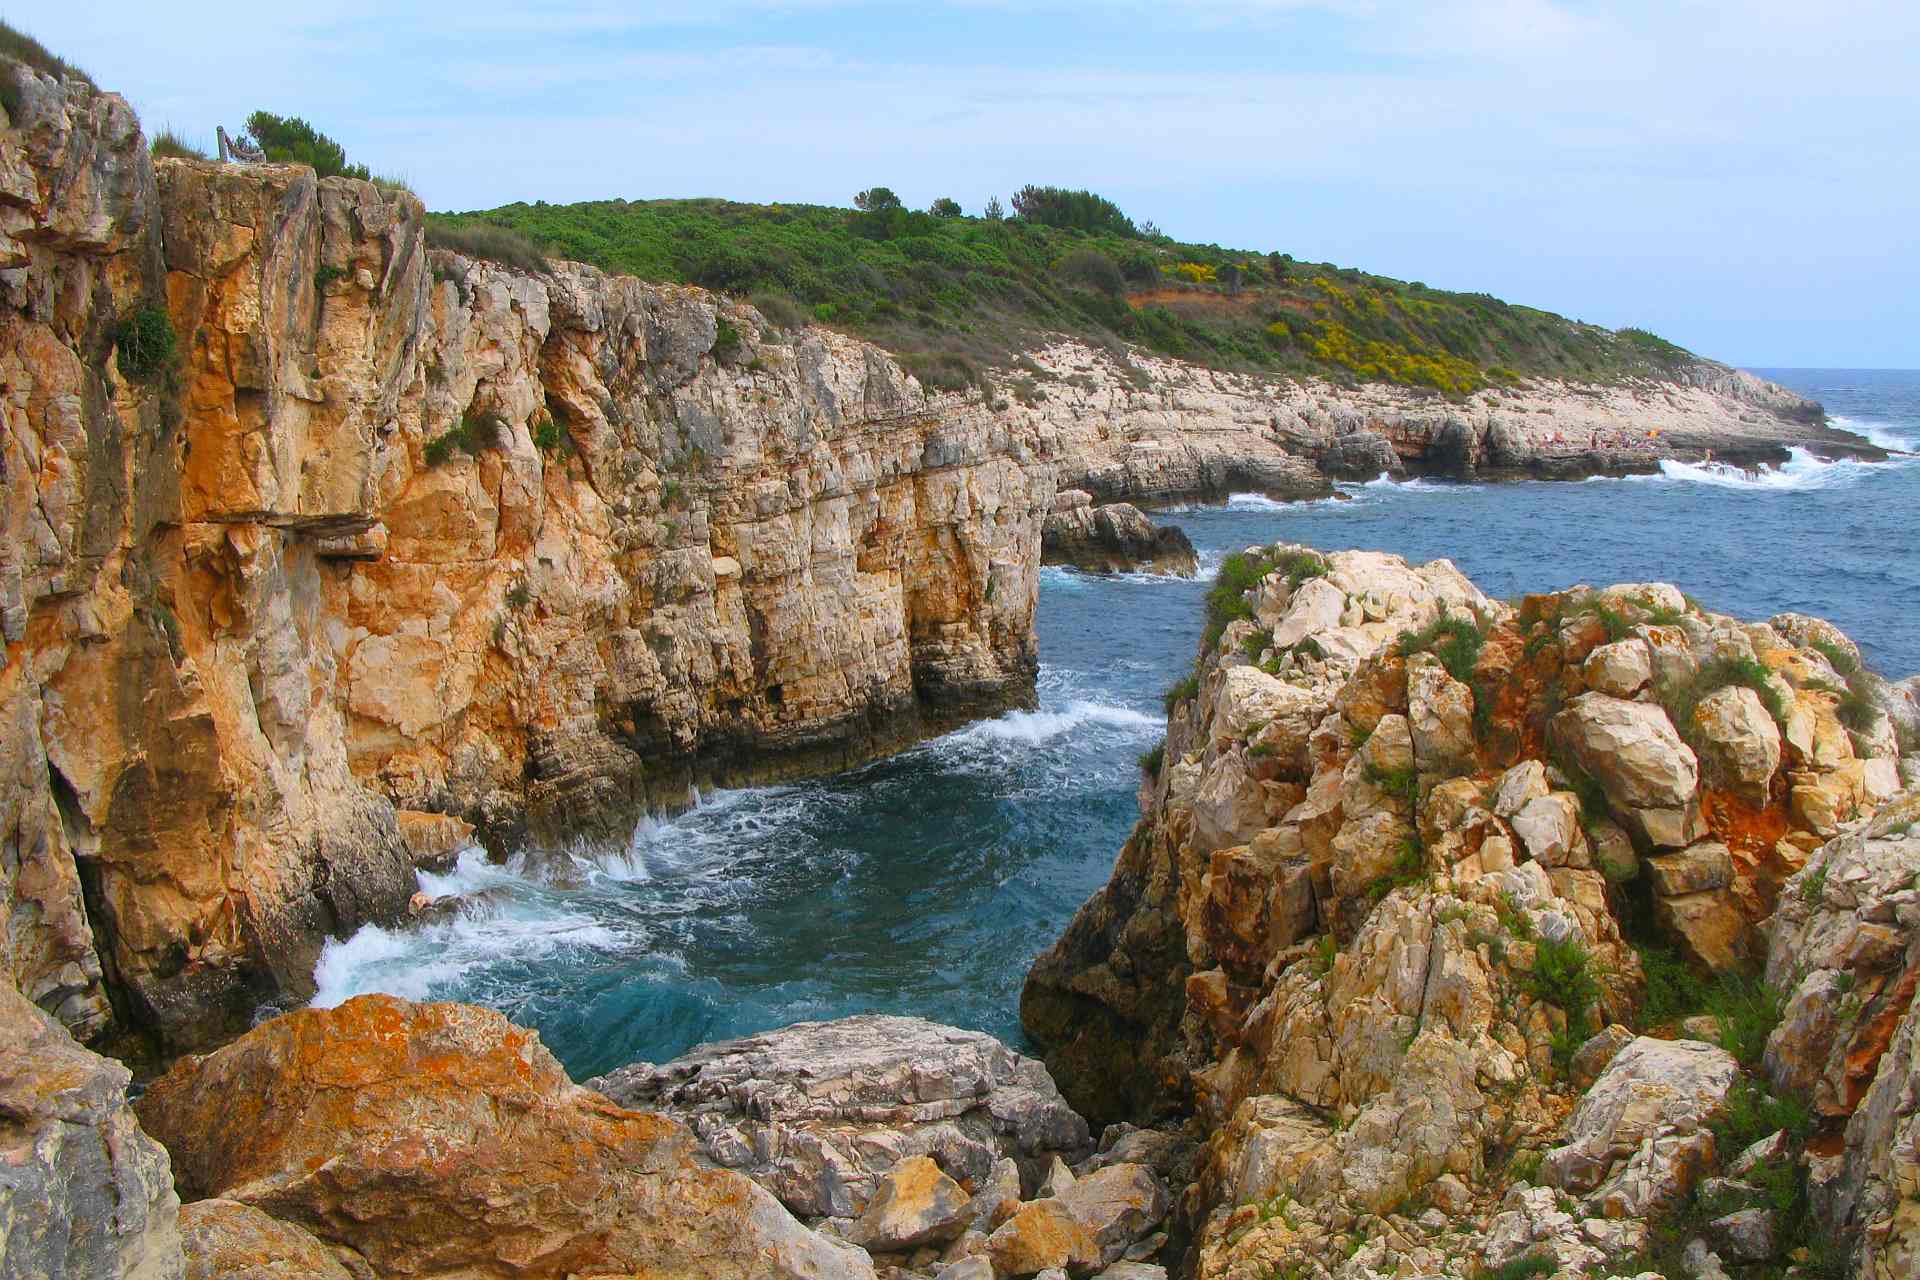 Das Kap Kamenjak liegt an der südlichsten Spitze Istriens. Dabei reiht sich eine schöne Badebucht an die nächste entlang der zerklüfteten Küste des Naturschutzgebietes.